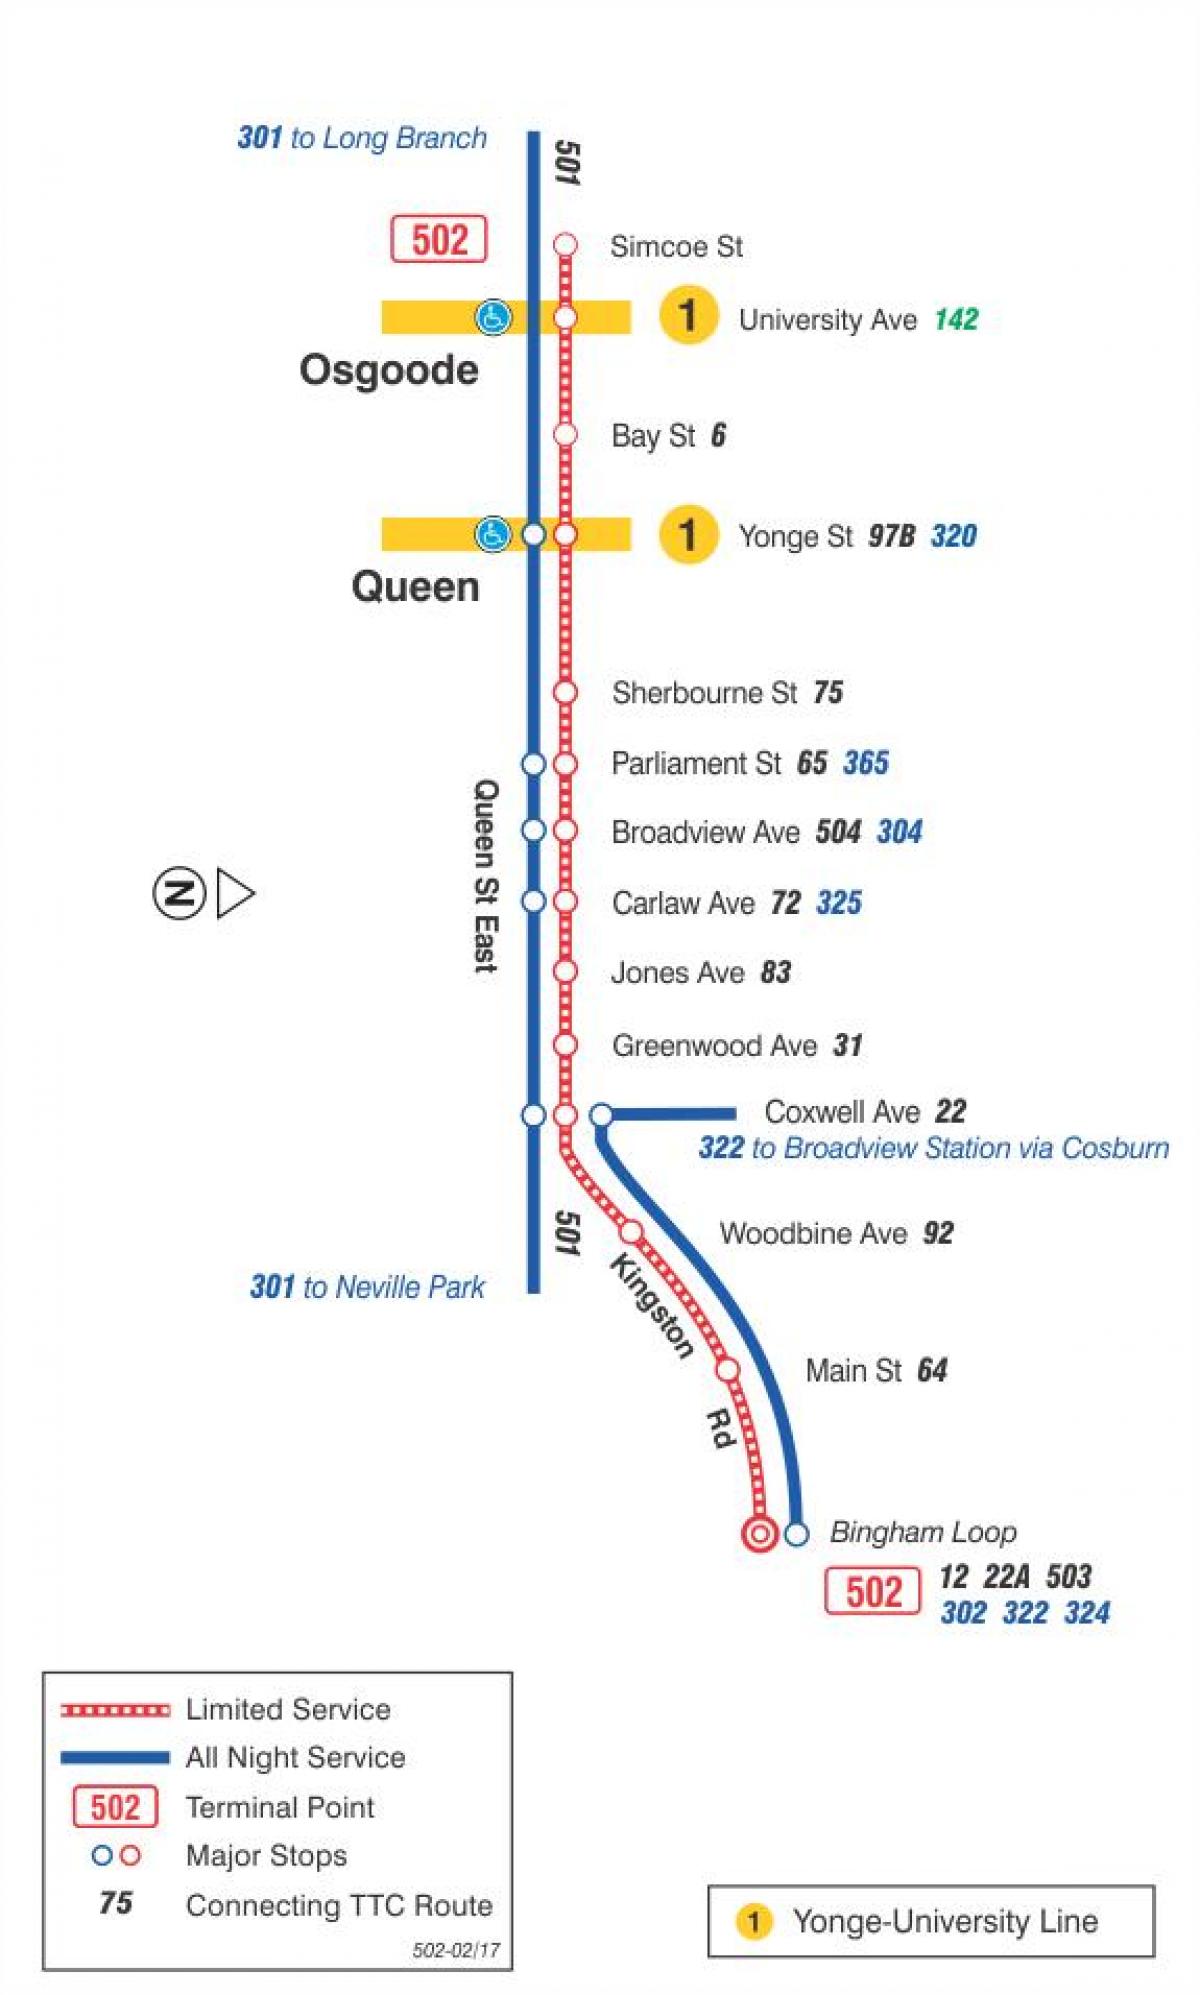 რუკა streetcar line 502 Downtowner